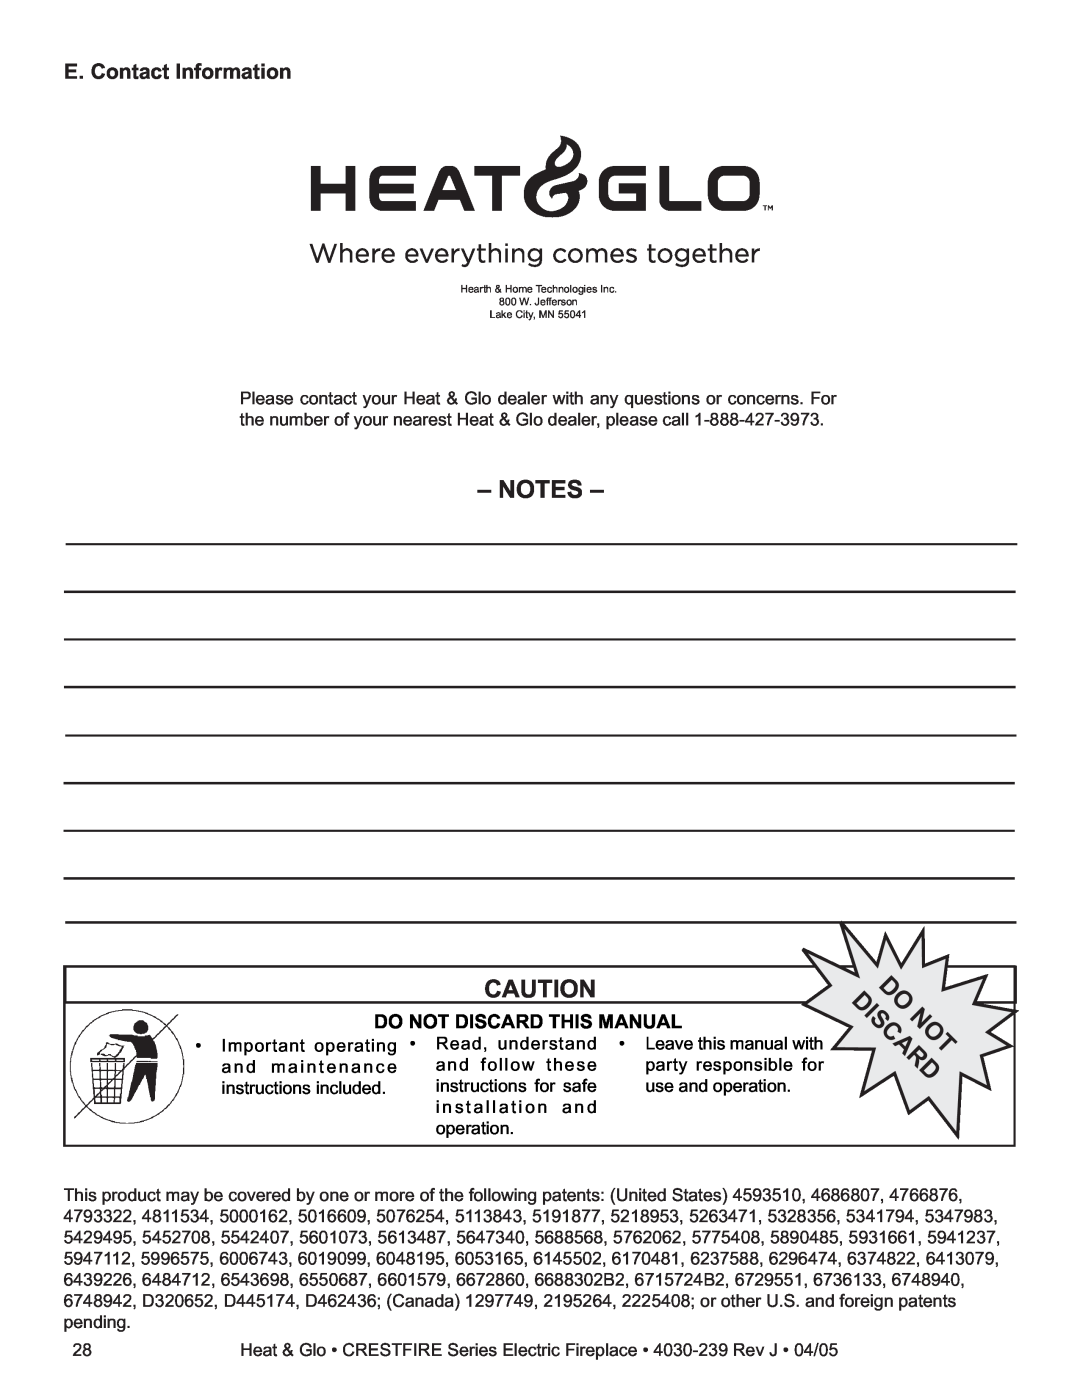 Heat & Glo LifeStyle CF550EV, CF550ENH, CF750EV E. Contact Information, Do Not Discard This Manual, Do Discardnot 